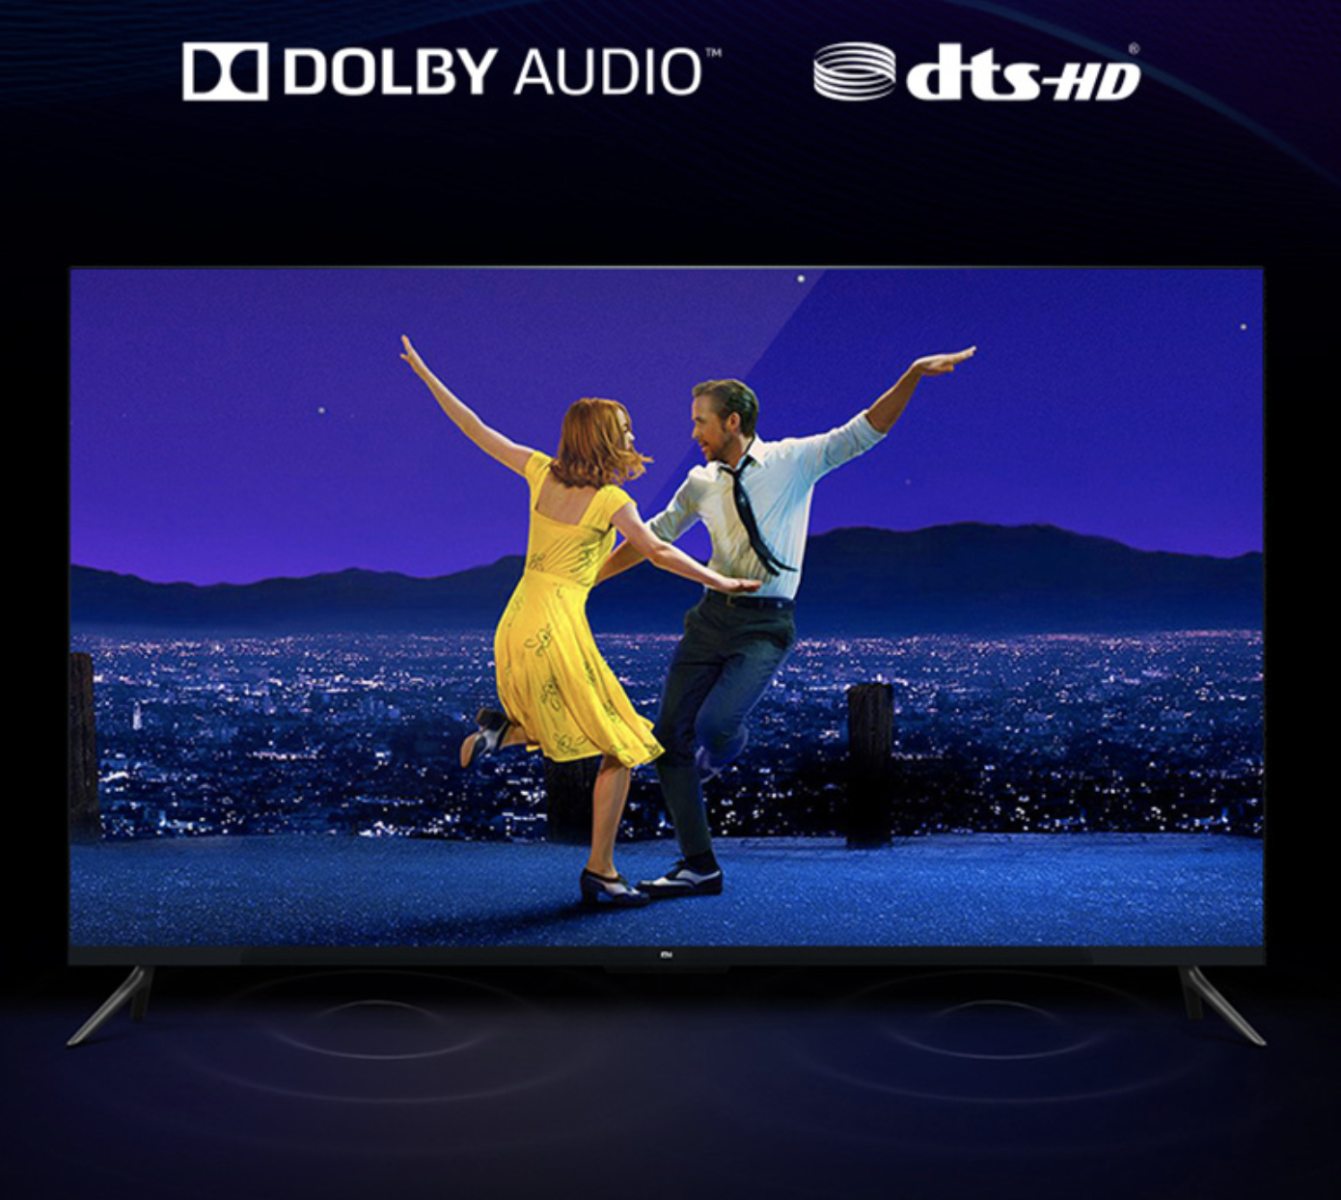 Âm thanh với công nghệ Dolby + DTS HD